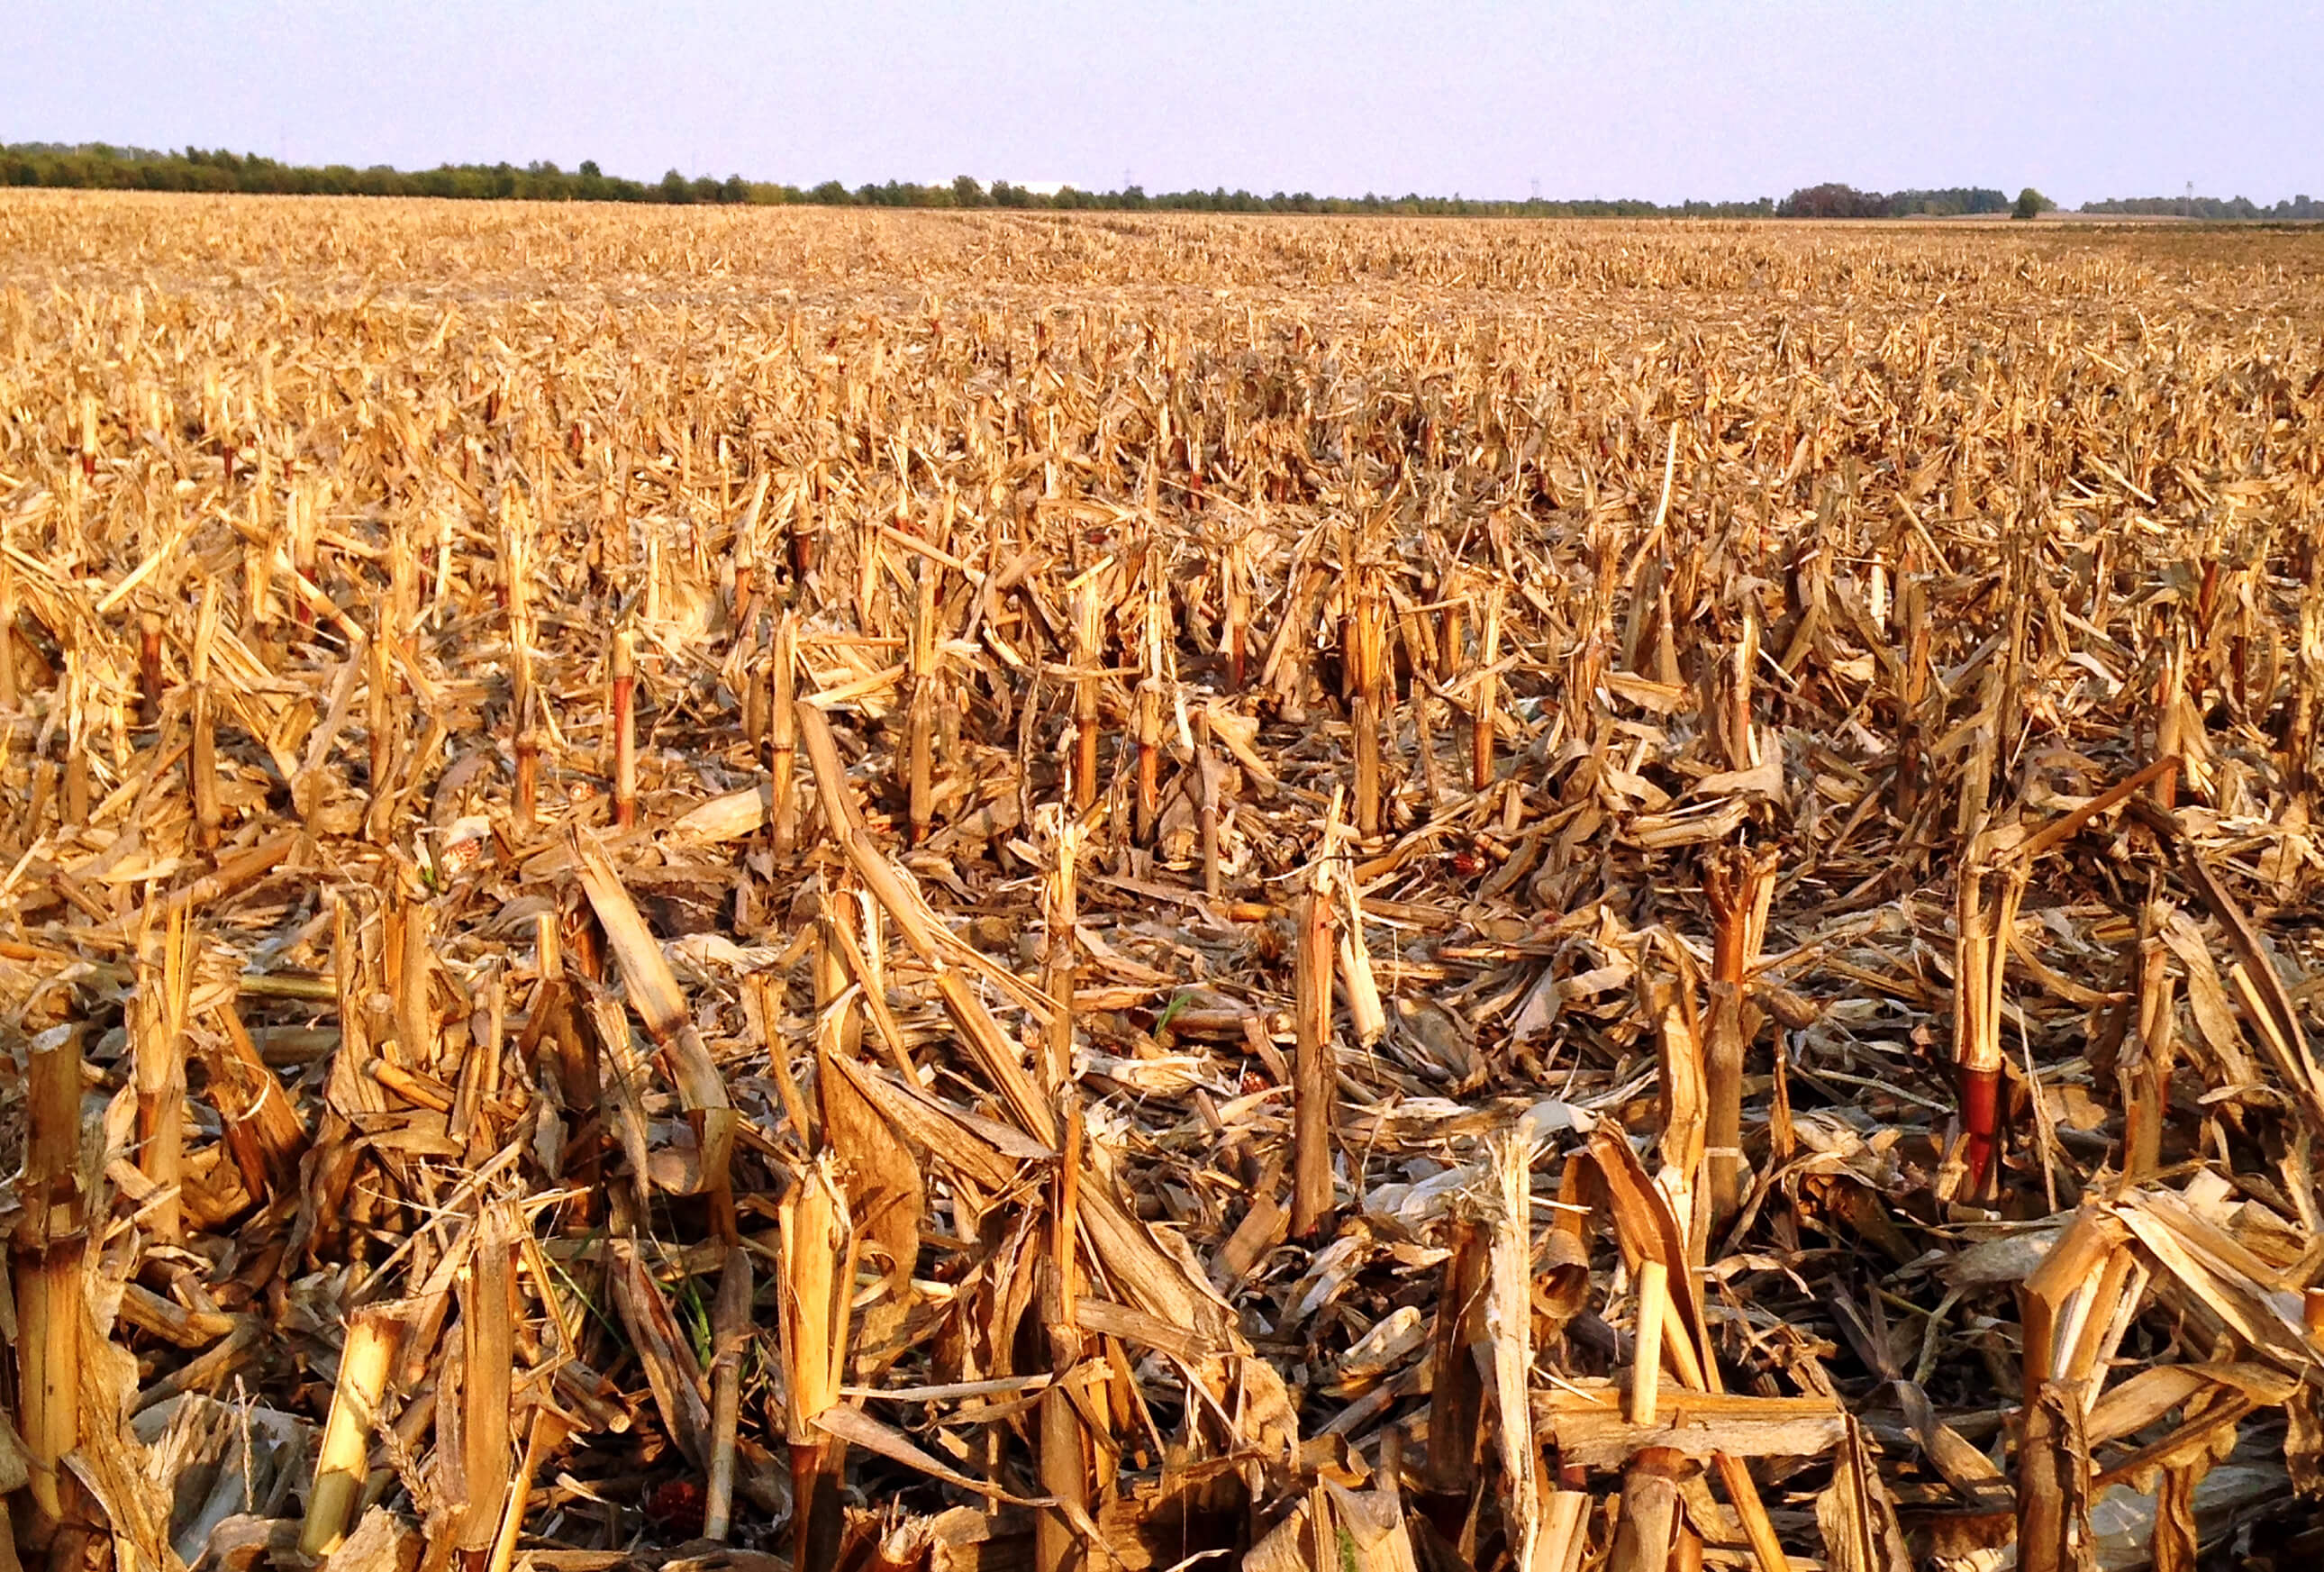 Остатки растительного происхождения. Стерня кукурузы. Кукурузное поле. Поле после уборки урожая. Стерня пшеницы.